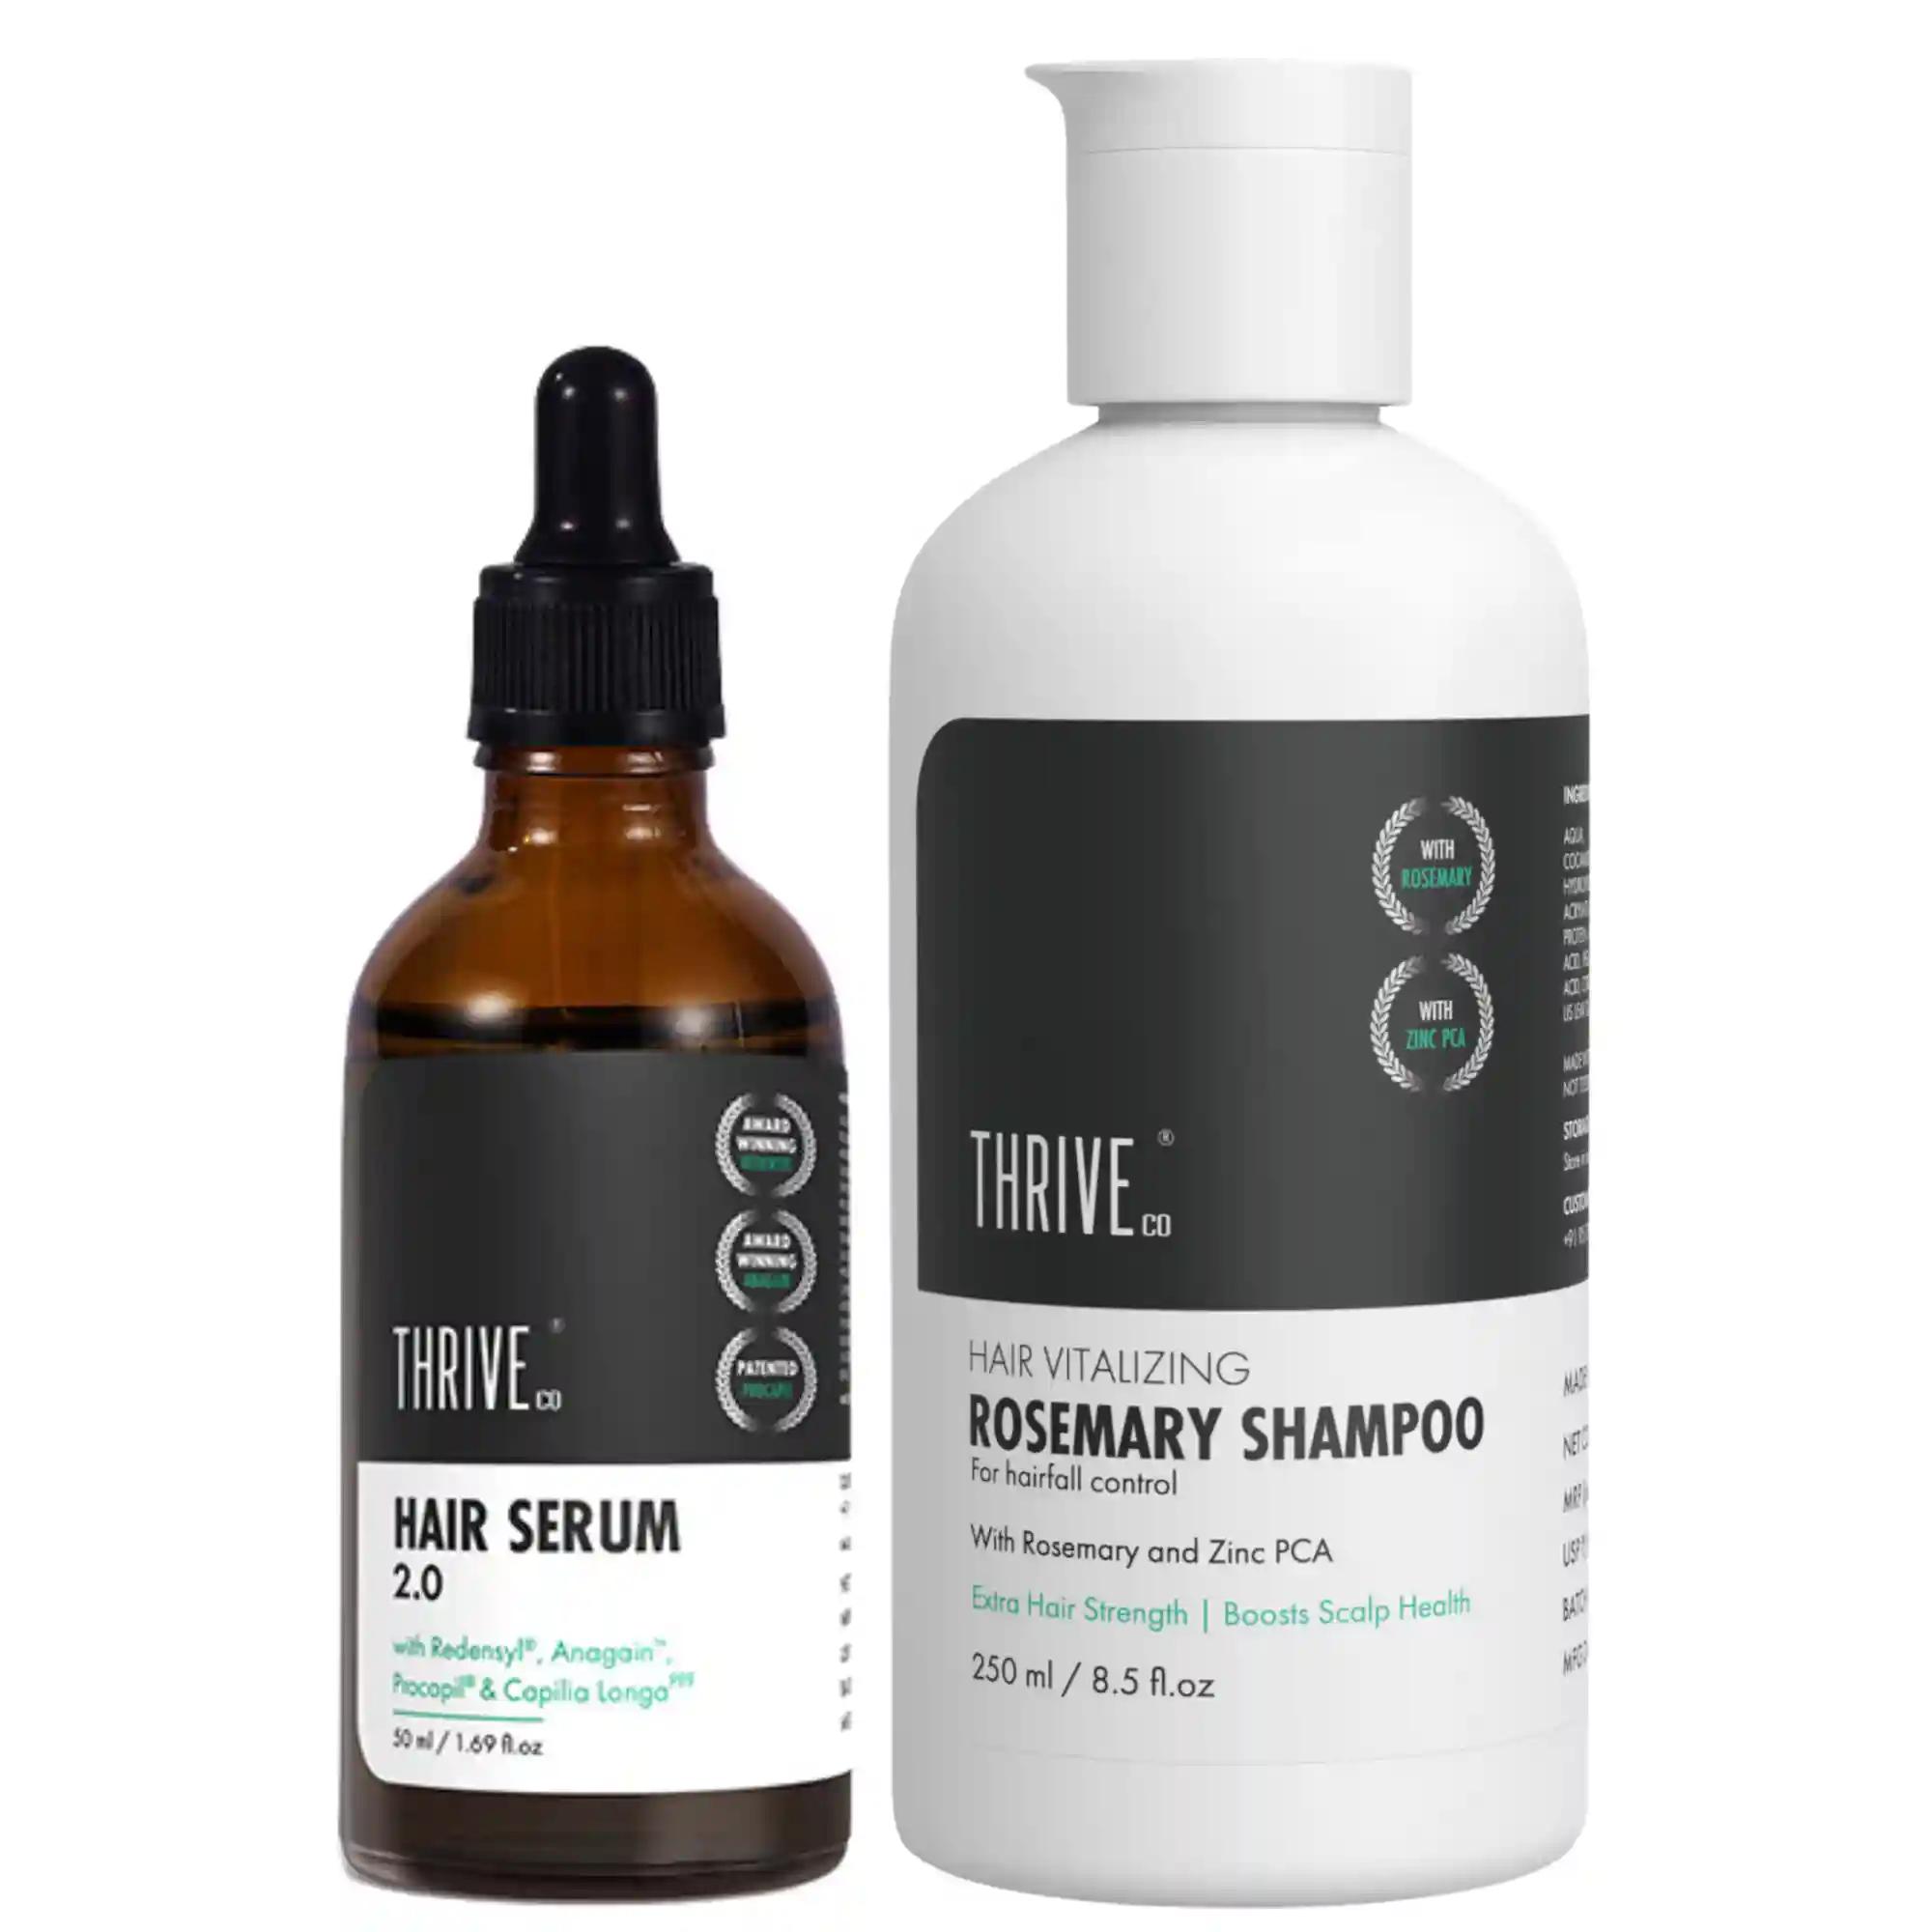 ThriveCo Restorative Hair Growth Kit: Hair Growth Serum 2.0 & Hair Vitalizing Rosemary Shampoo